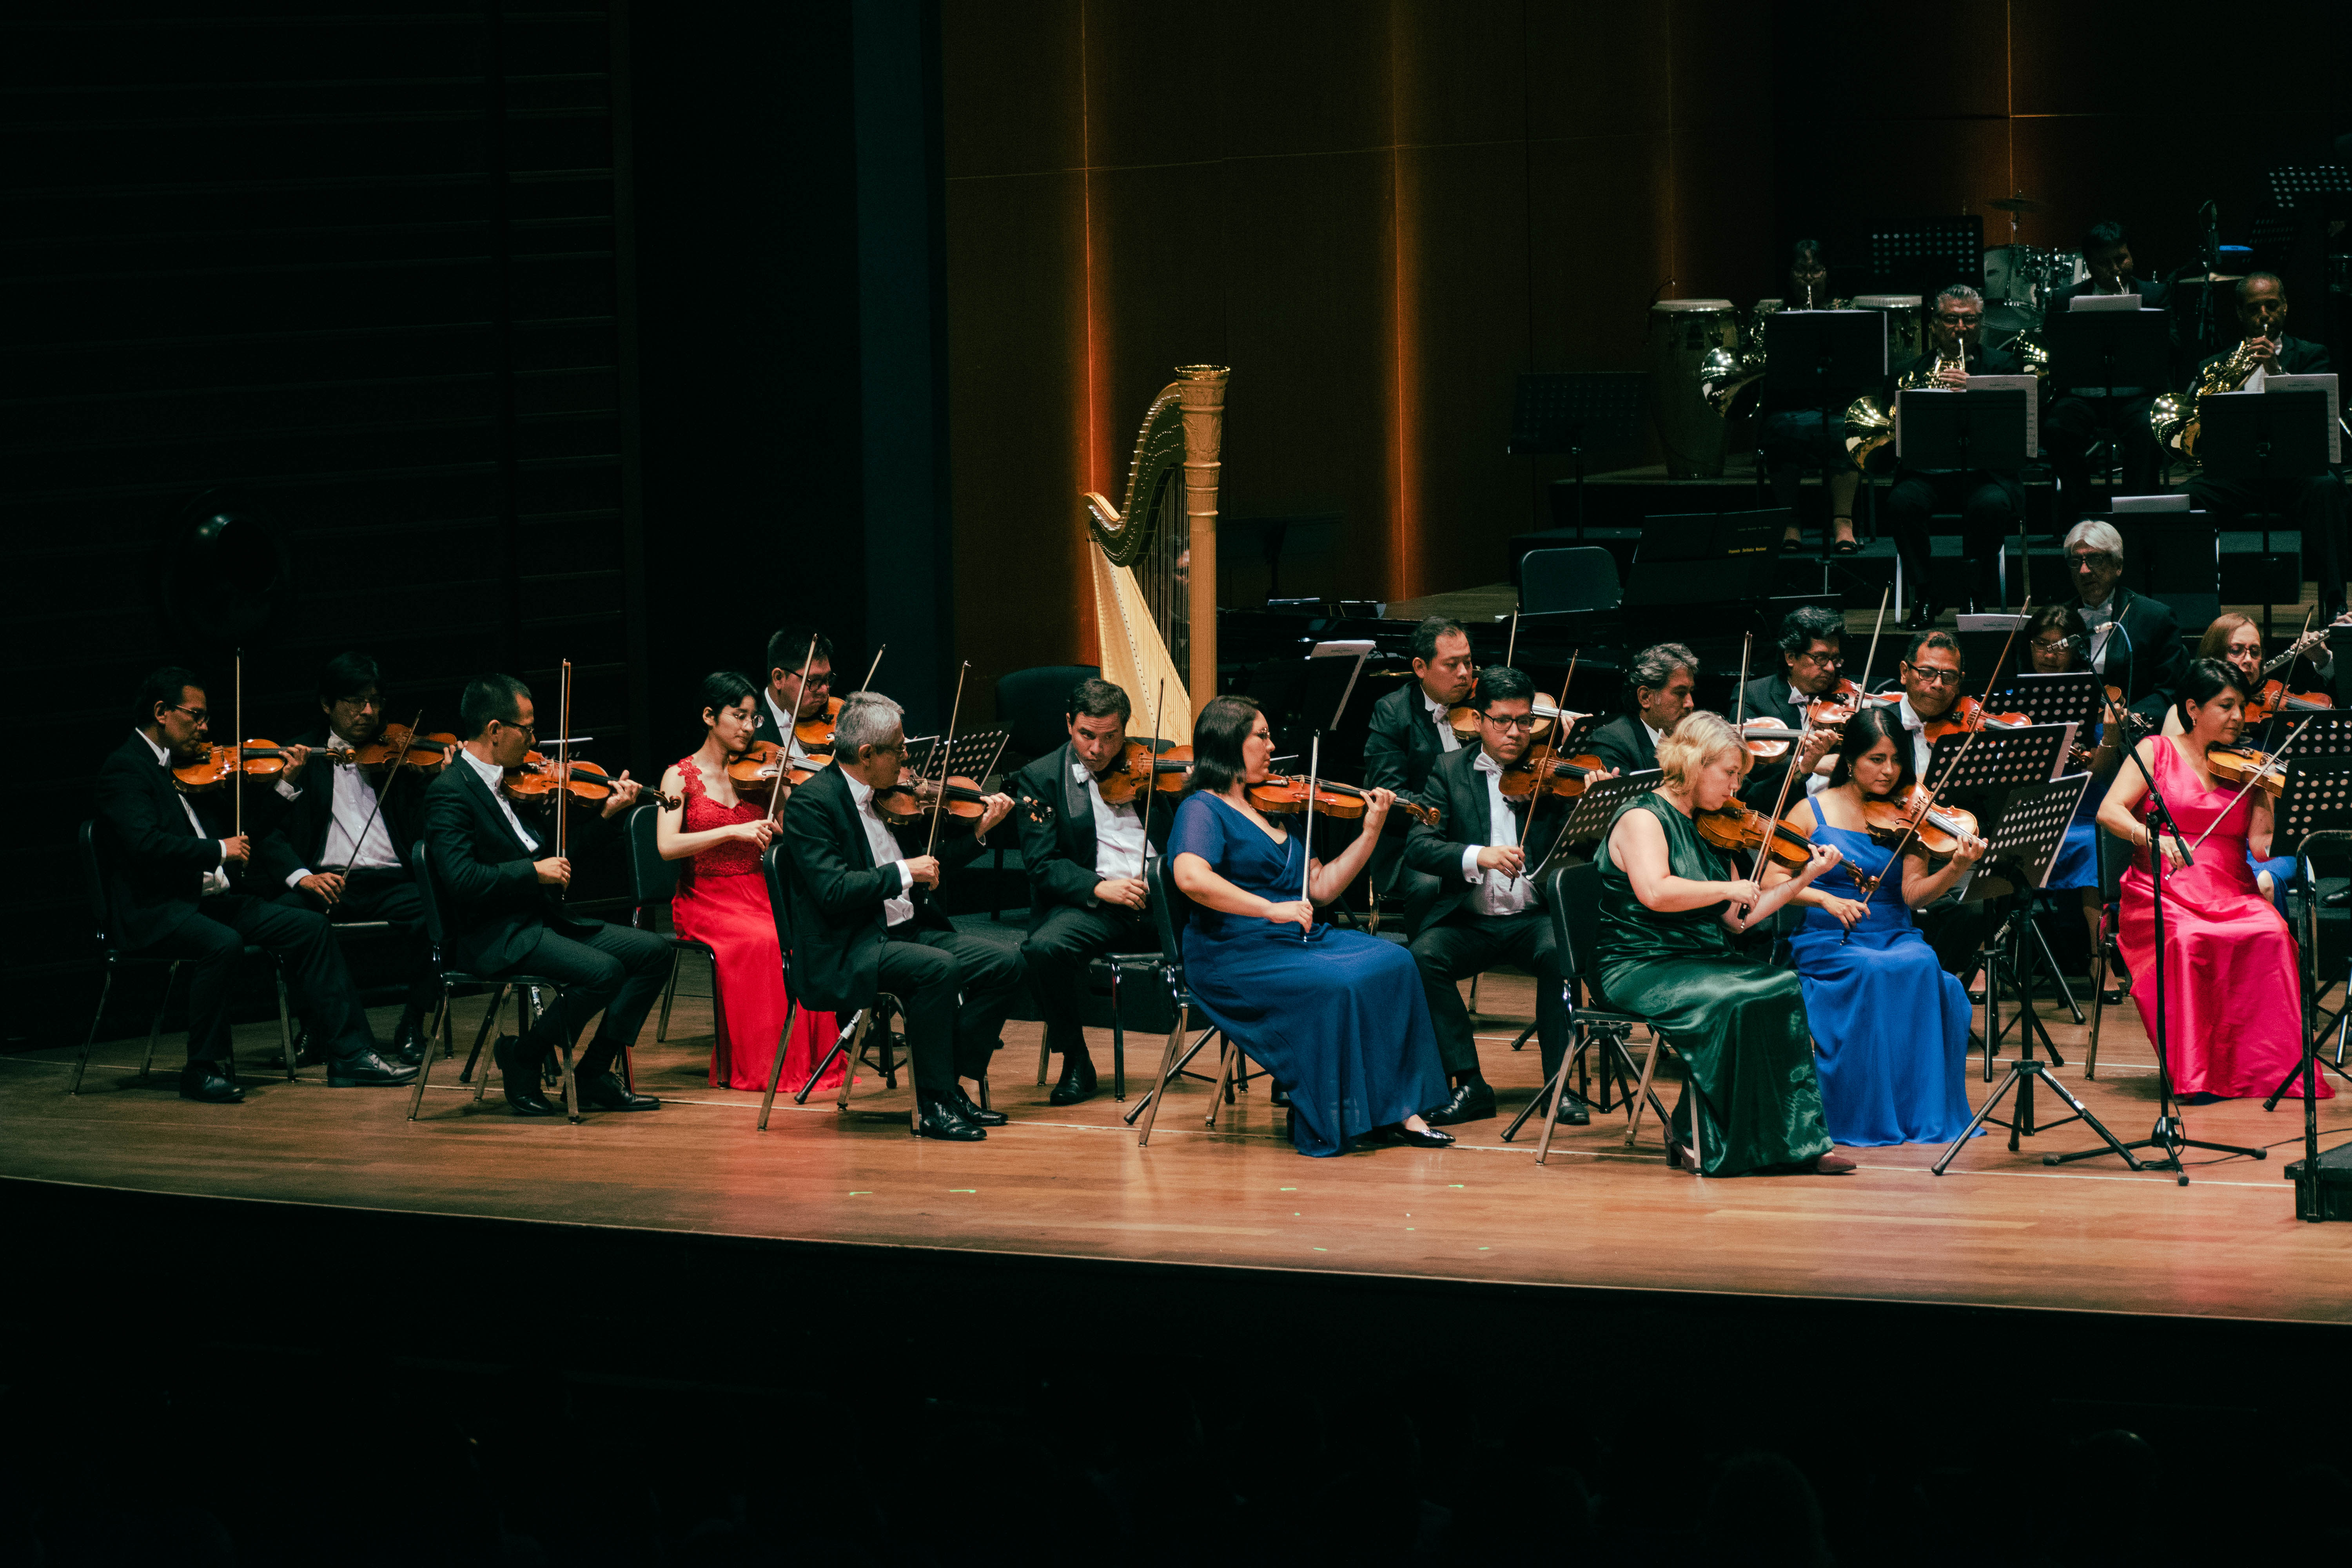 Orquesta Sinfónica Nacional del Perú presenta el concierto “Cuadros de una exposición” en el Gran Teatro Nacional